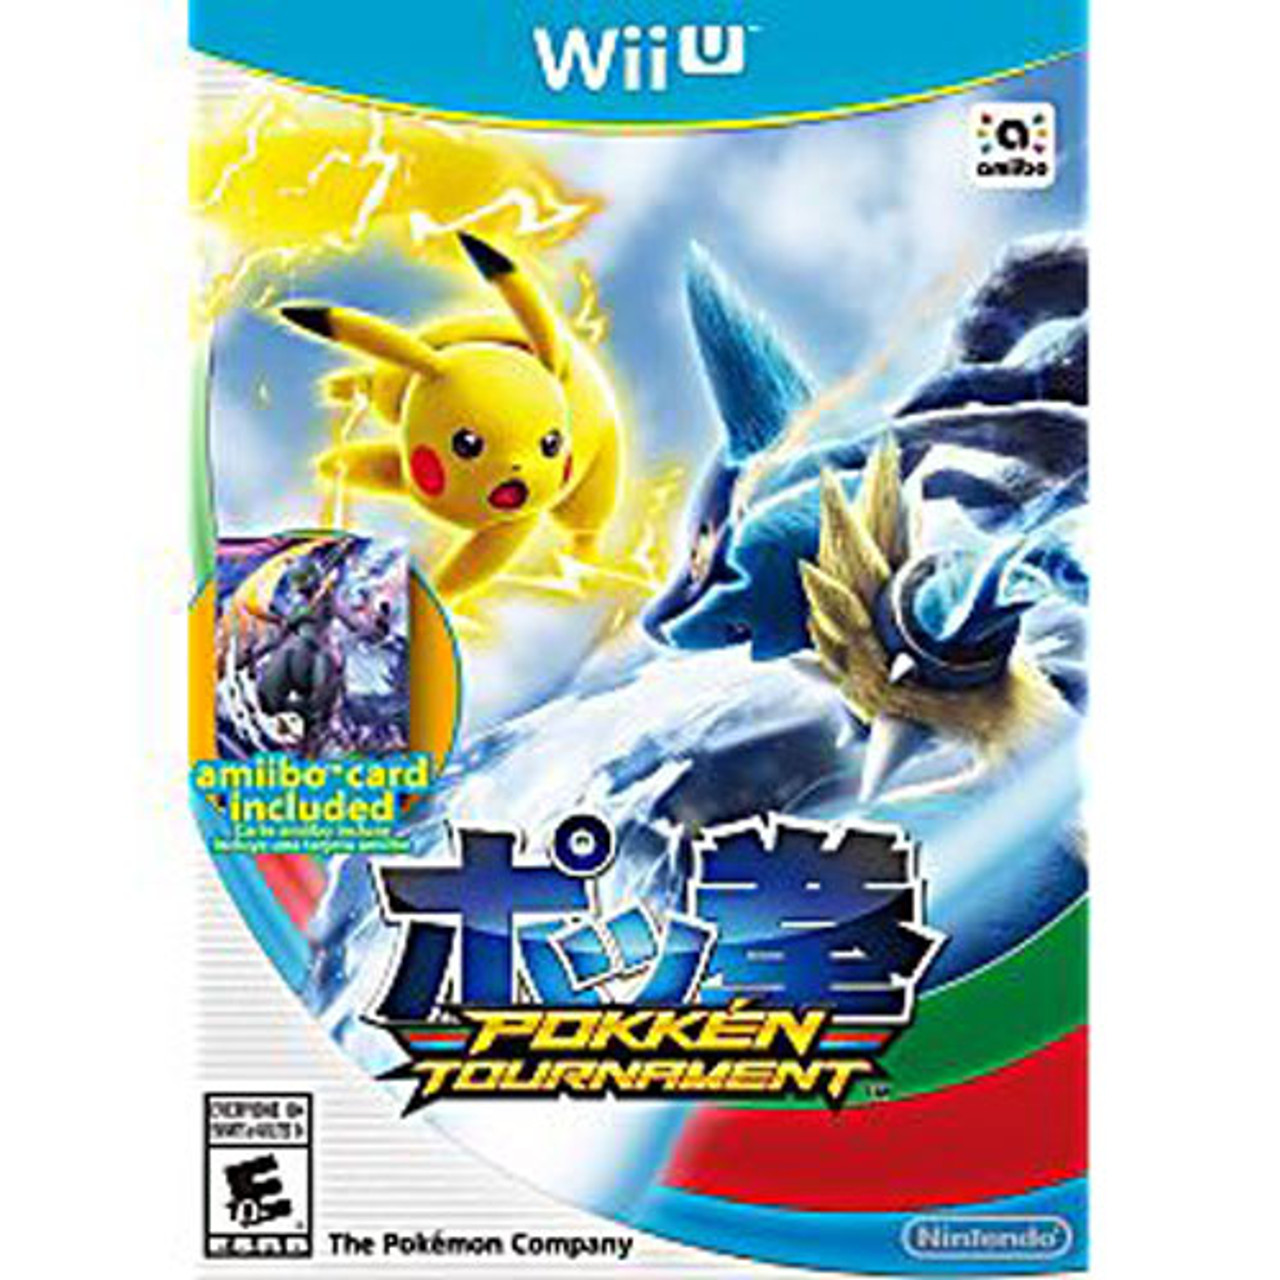 Pokken Tournament Wii U Game For Sale | DKOldies